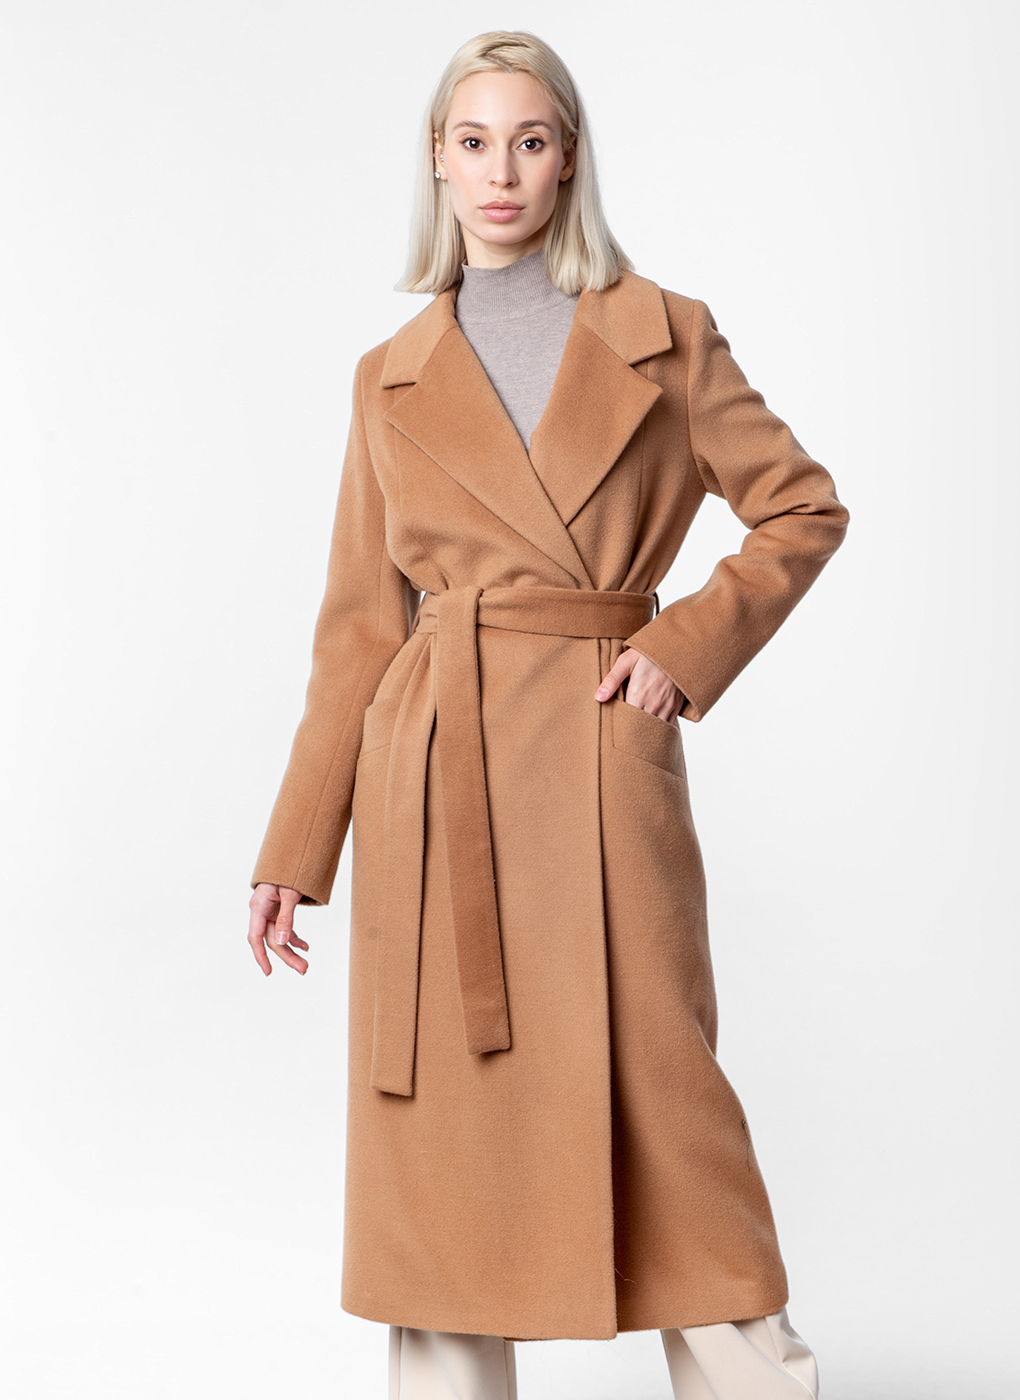 Пальто женское Каляев 59831 коричневое 52 RU